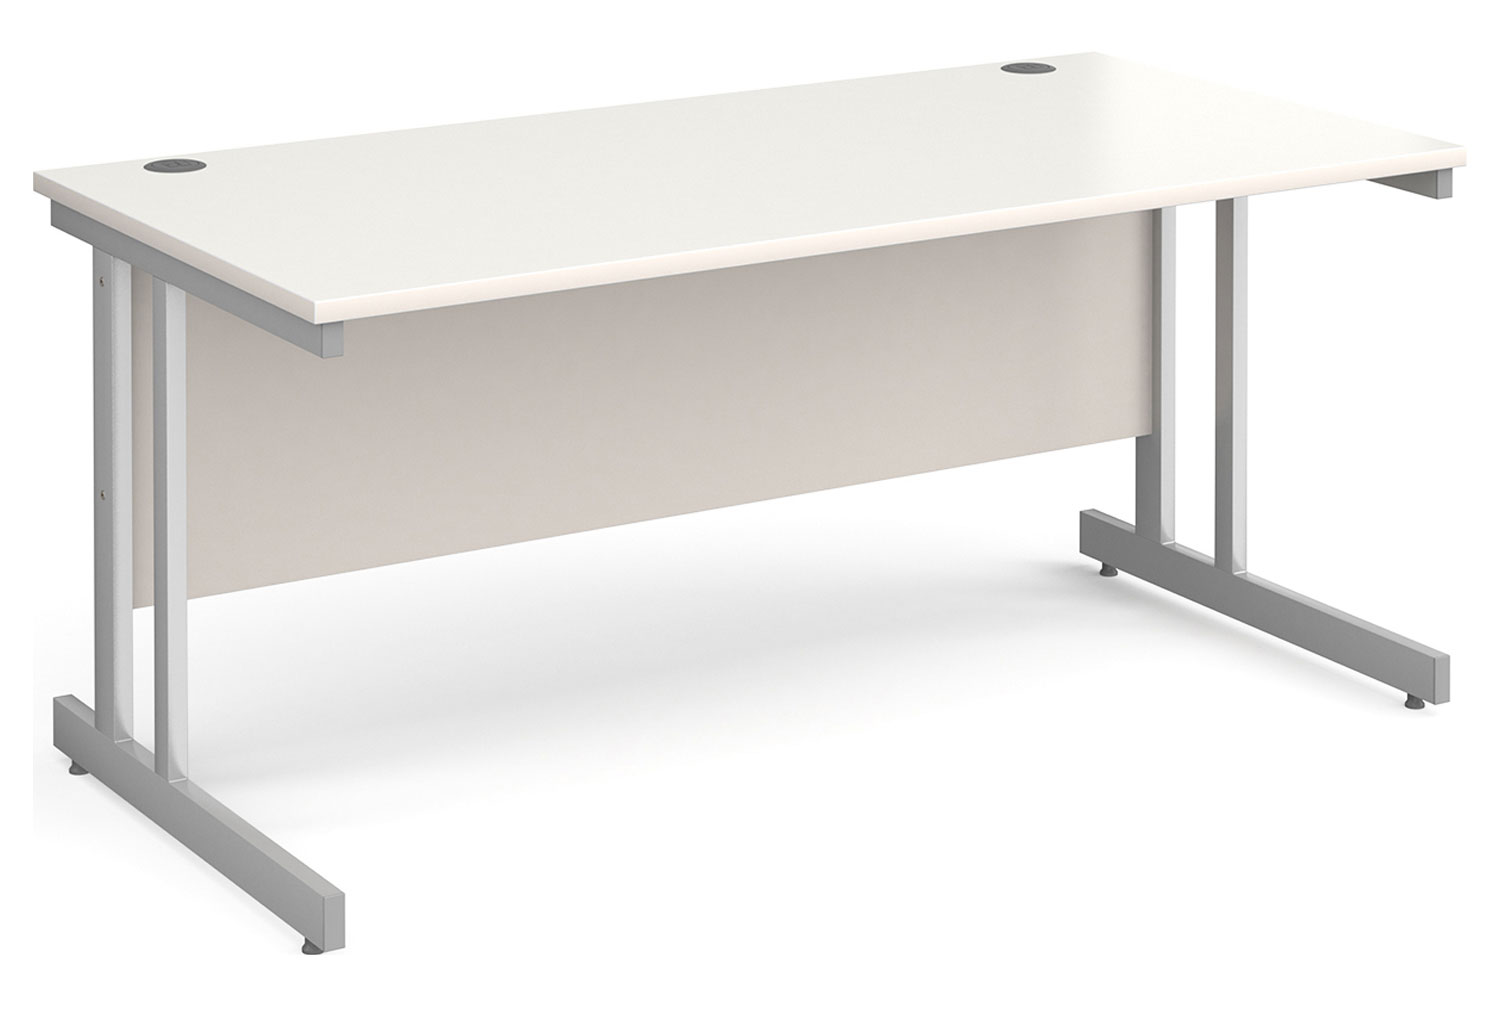 All White Double C-Leg Rectangular Office Desk, 160wx80dx73h (cm)